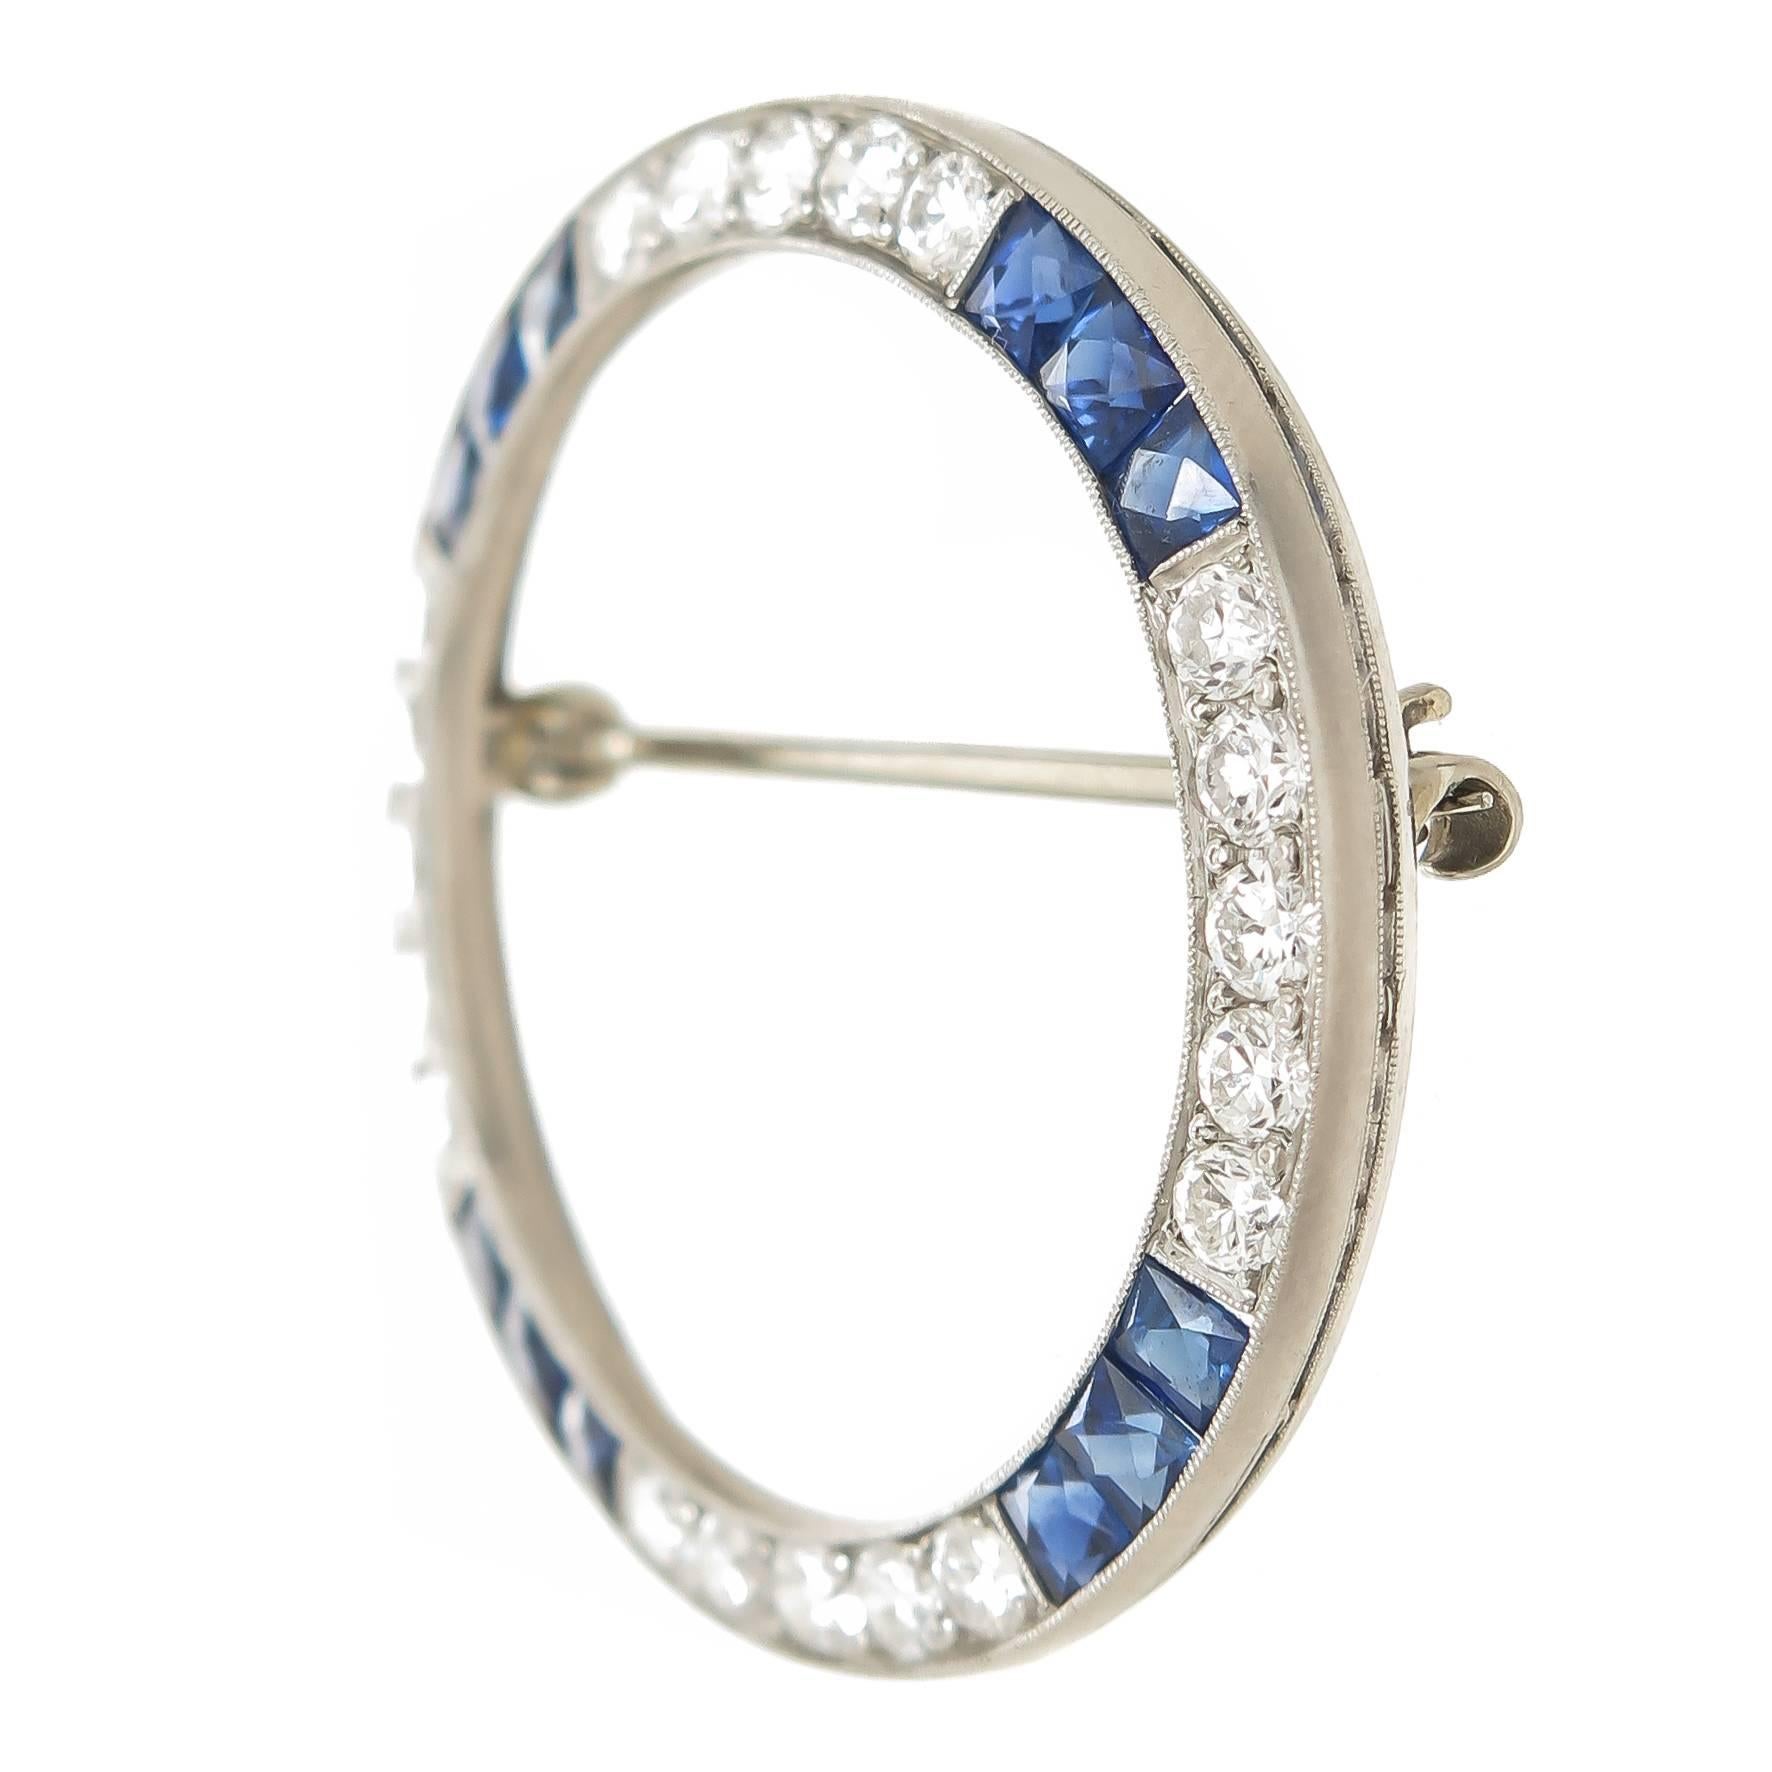 Circa 1960 Broche circulaire en platine d'Oscar Heyman, sertie de diamants ronds de taille brillante totalisant 1 carat et de saphirs de taille française de belle couleur. La broche mesure 1 3/8 pouce de diamètre. 